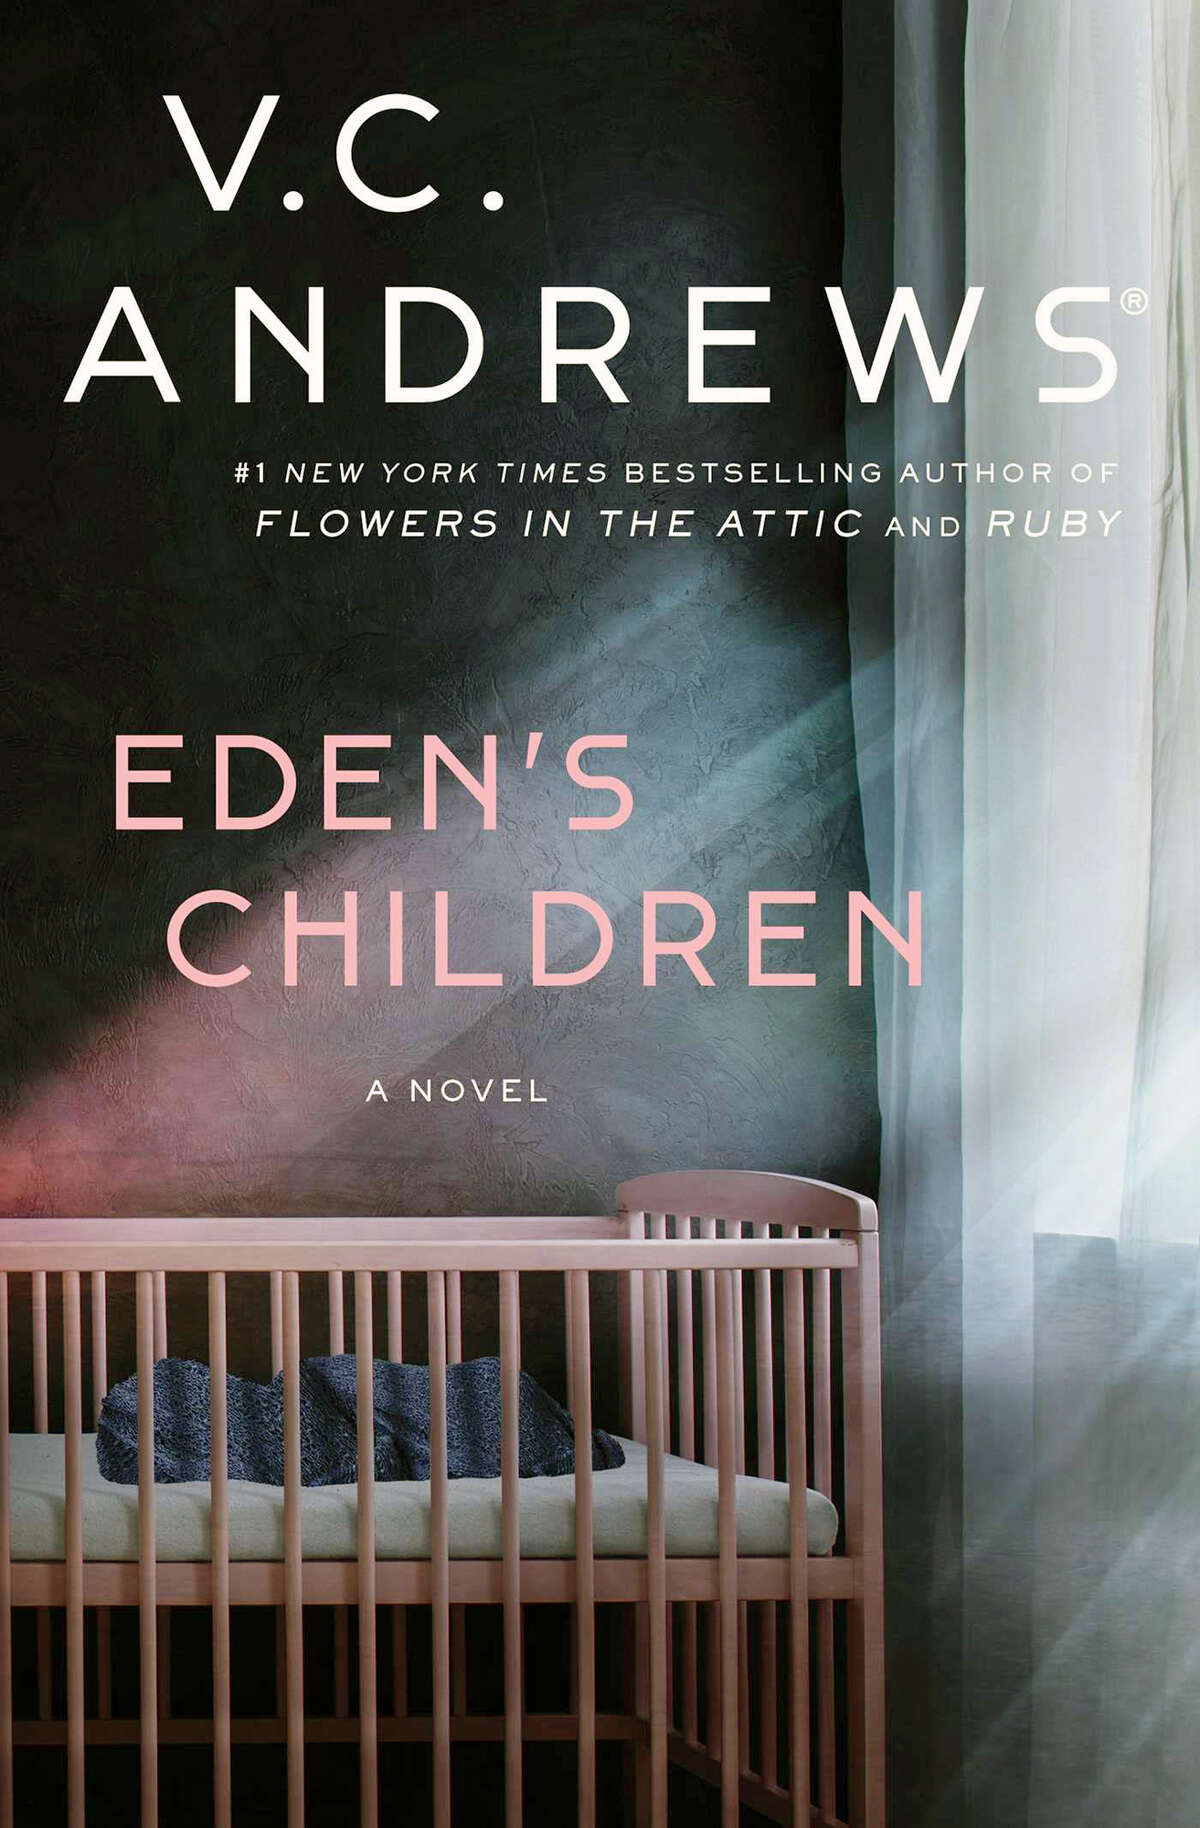 "Eden's Children"